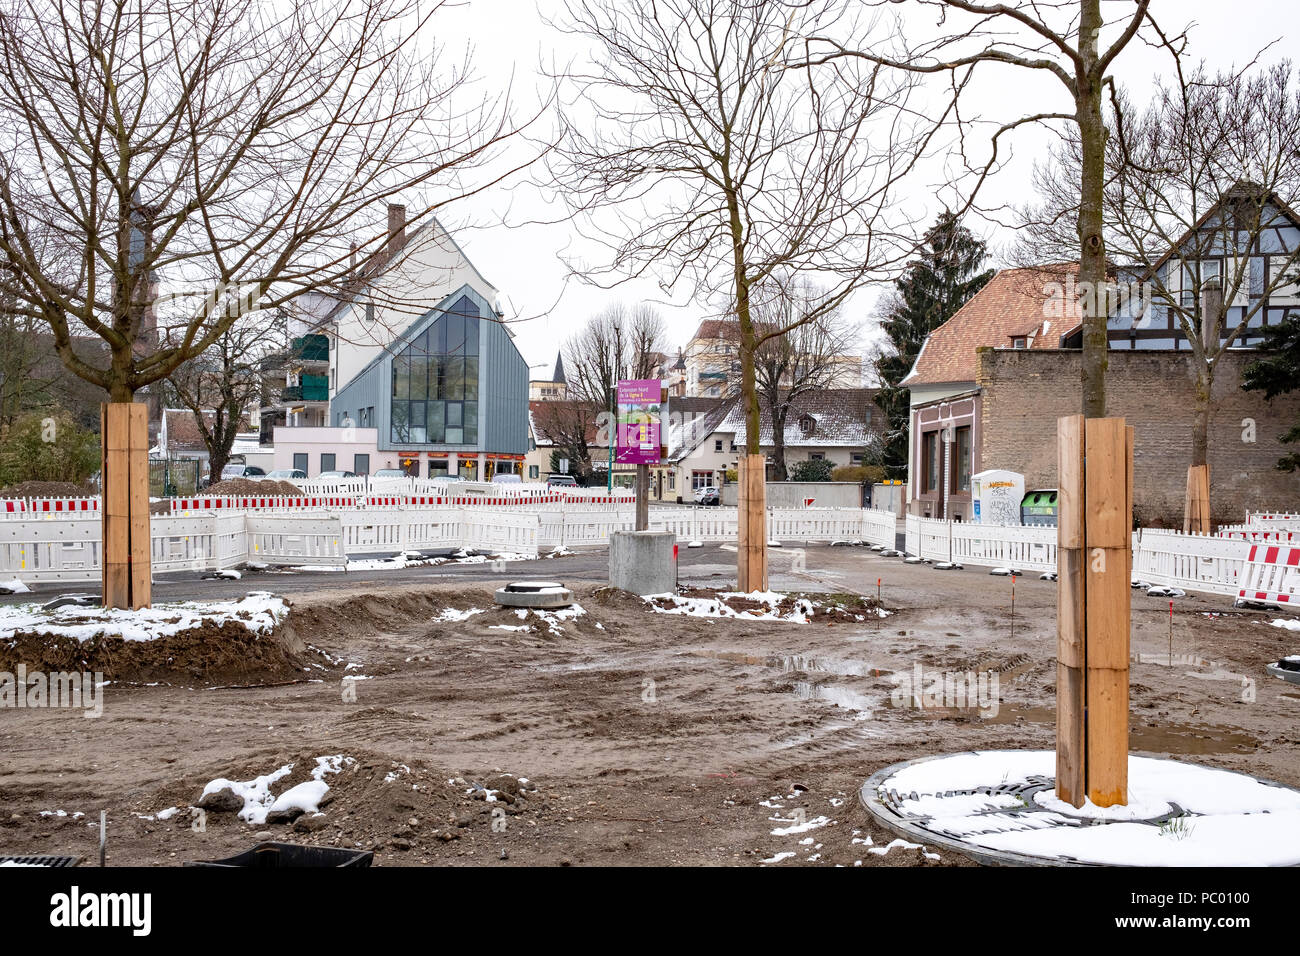 Strasburgo, tram preliminare sito in costruzione, linea e estensione, quadrato, protetto tronchi di alberi, le barriere in plastica, case, Alsazia, Francia, Europa Foto Stock